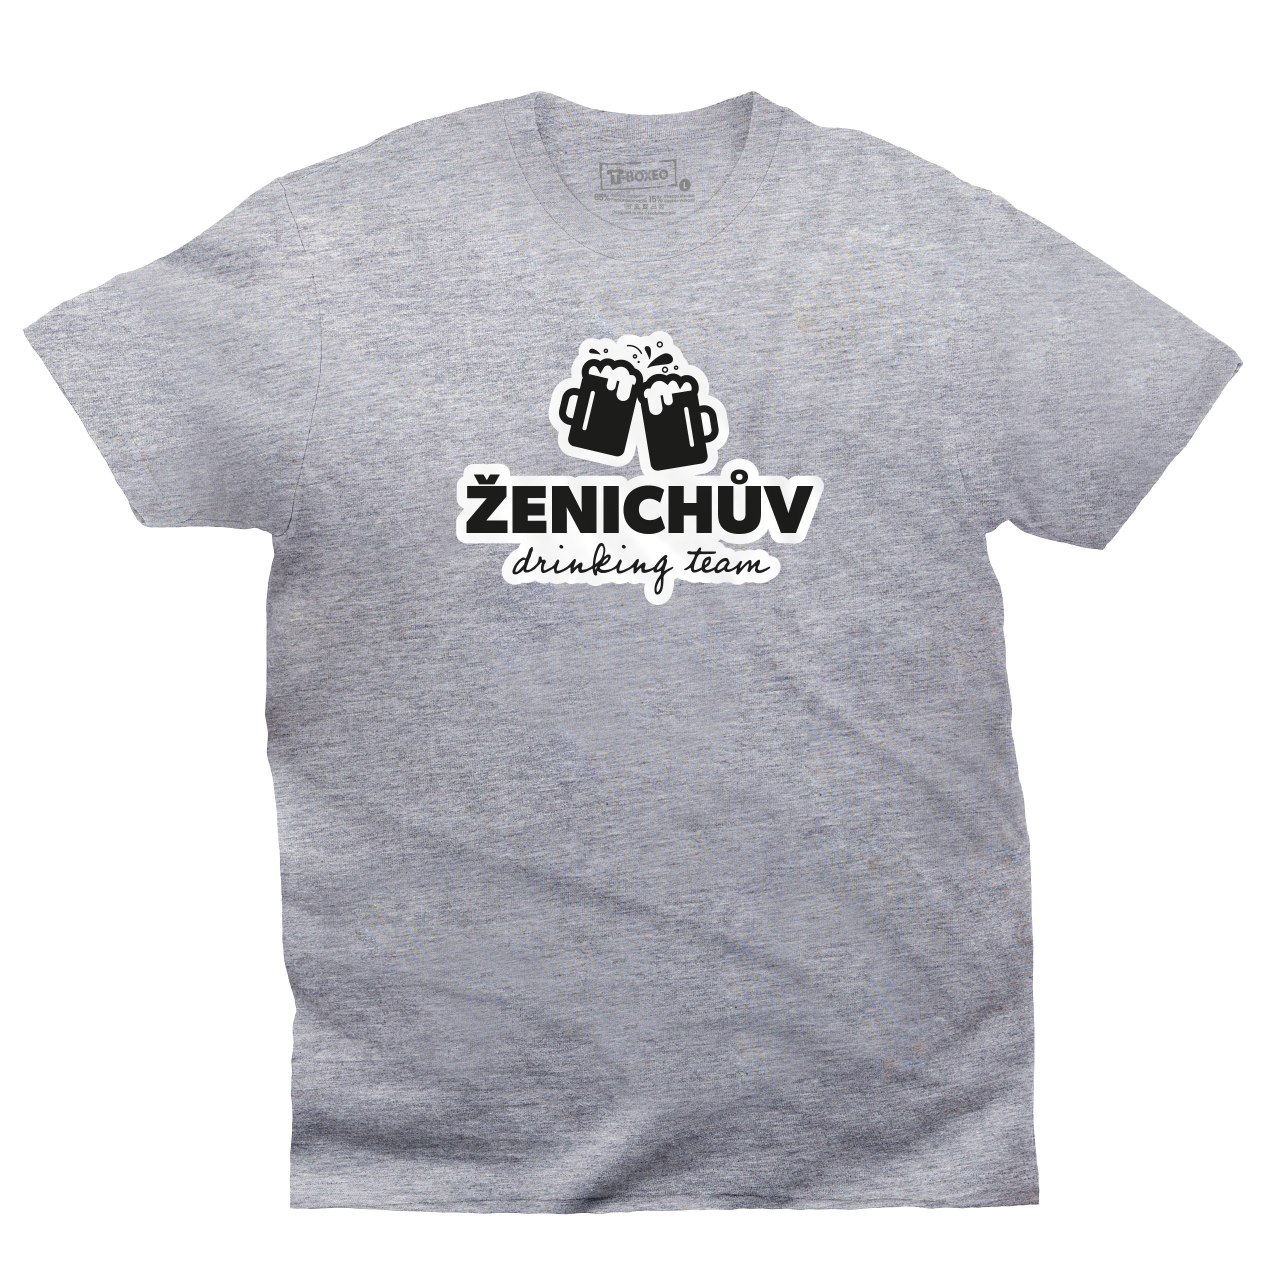 Pánské tričko s potiskem “Ženichův drinking team”